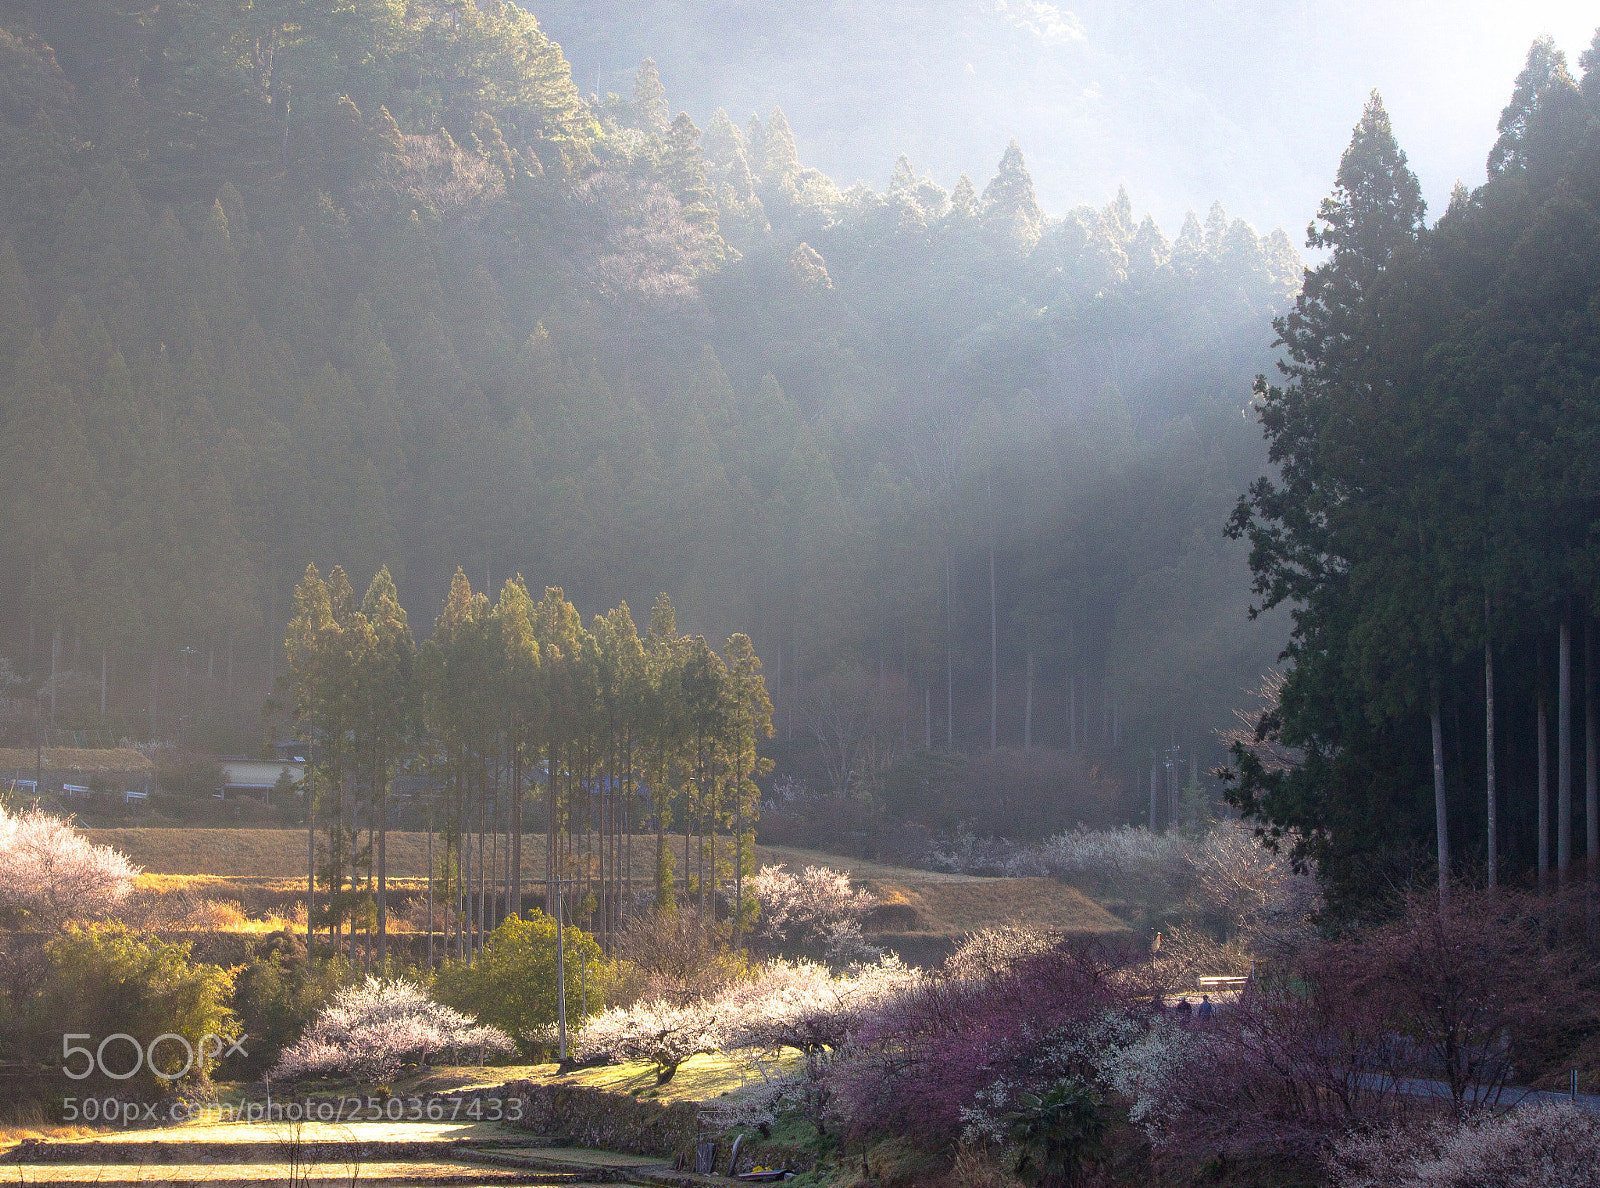 Canon EOS 100D (EOS Rebel SL1 / EOS Kiss X7) sample photo. "kaore" plum-garden in japan. photography